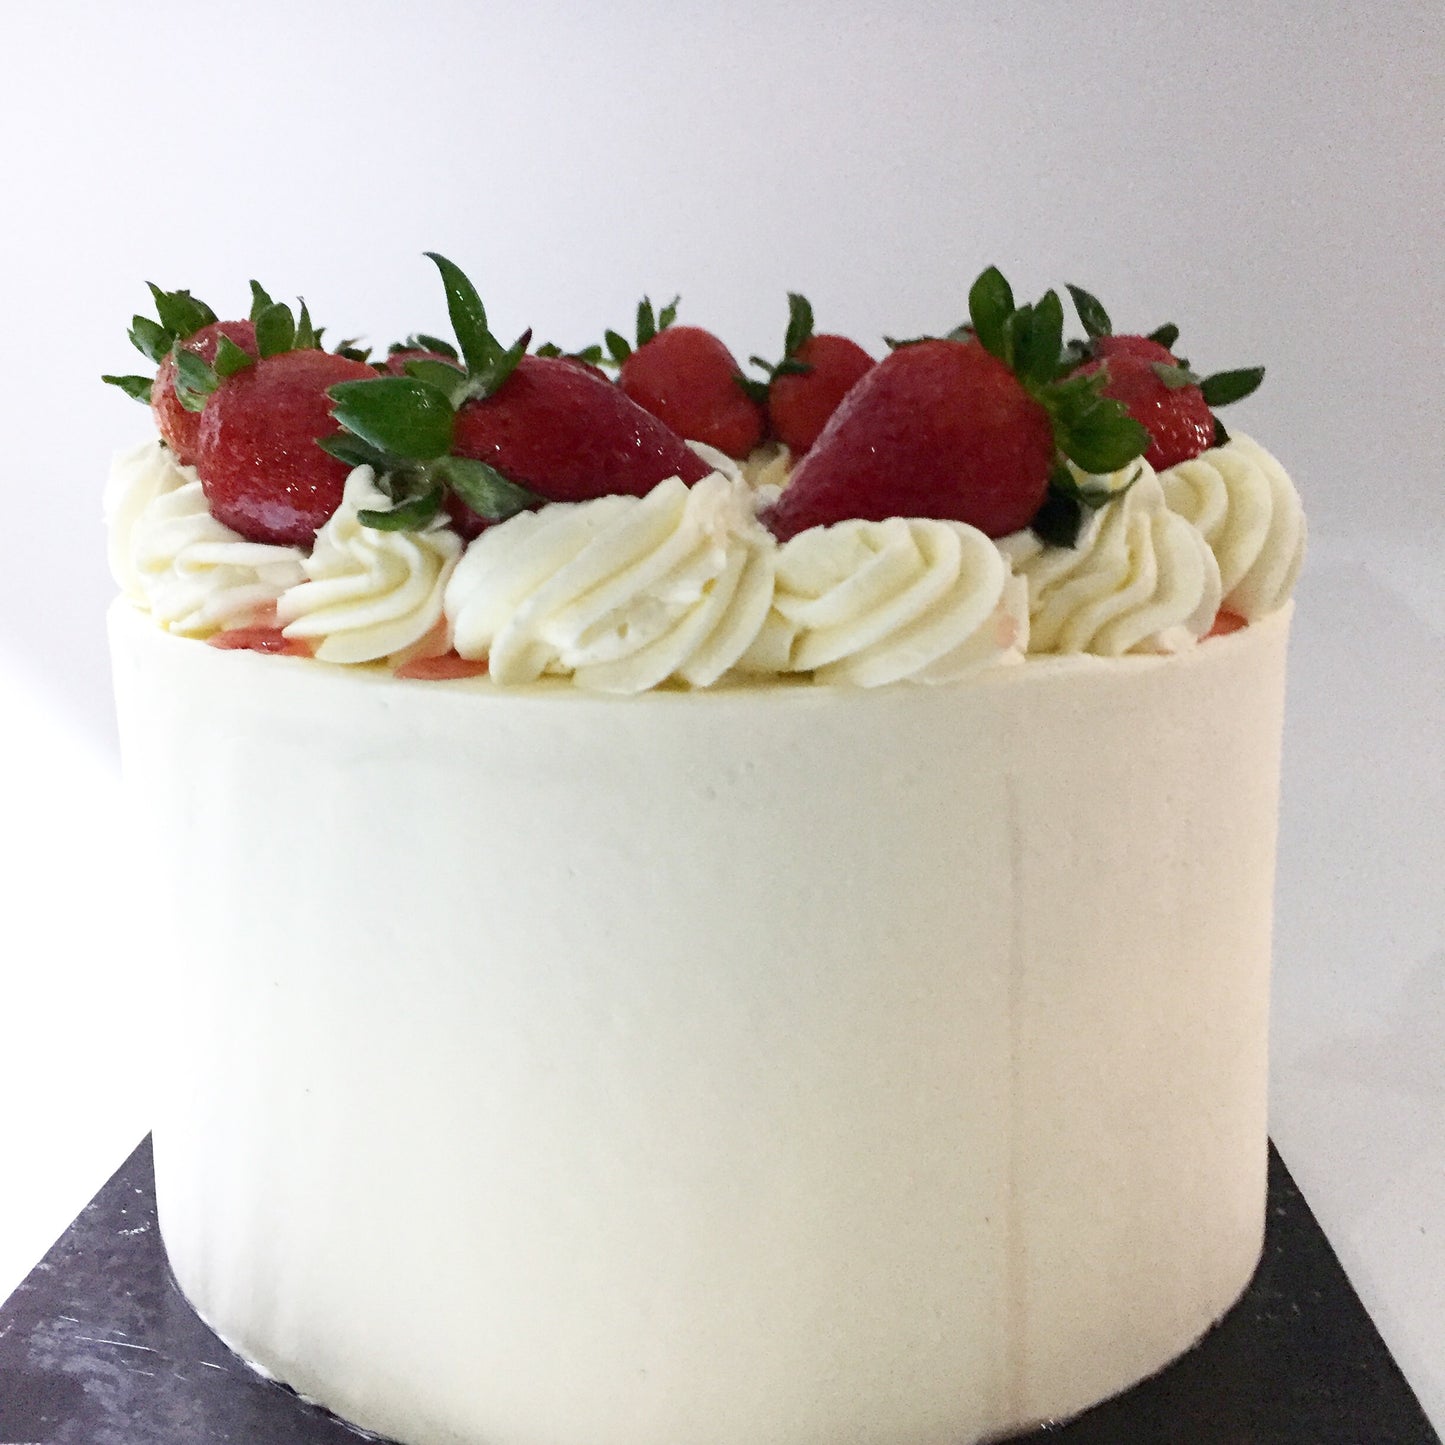 The Strawberries & Cream Cake